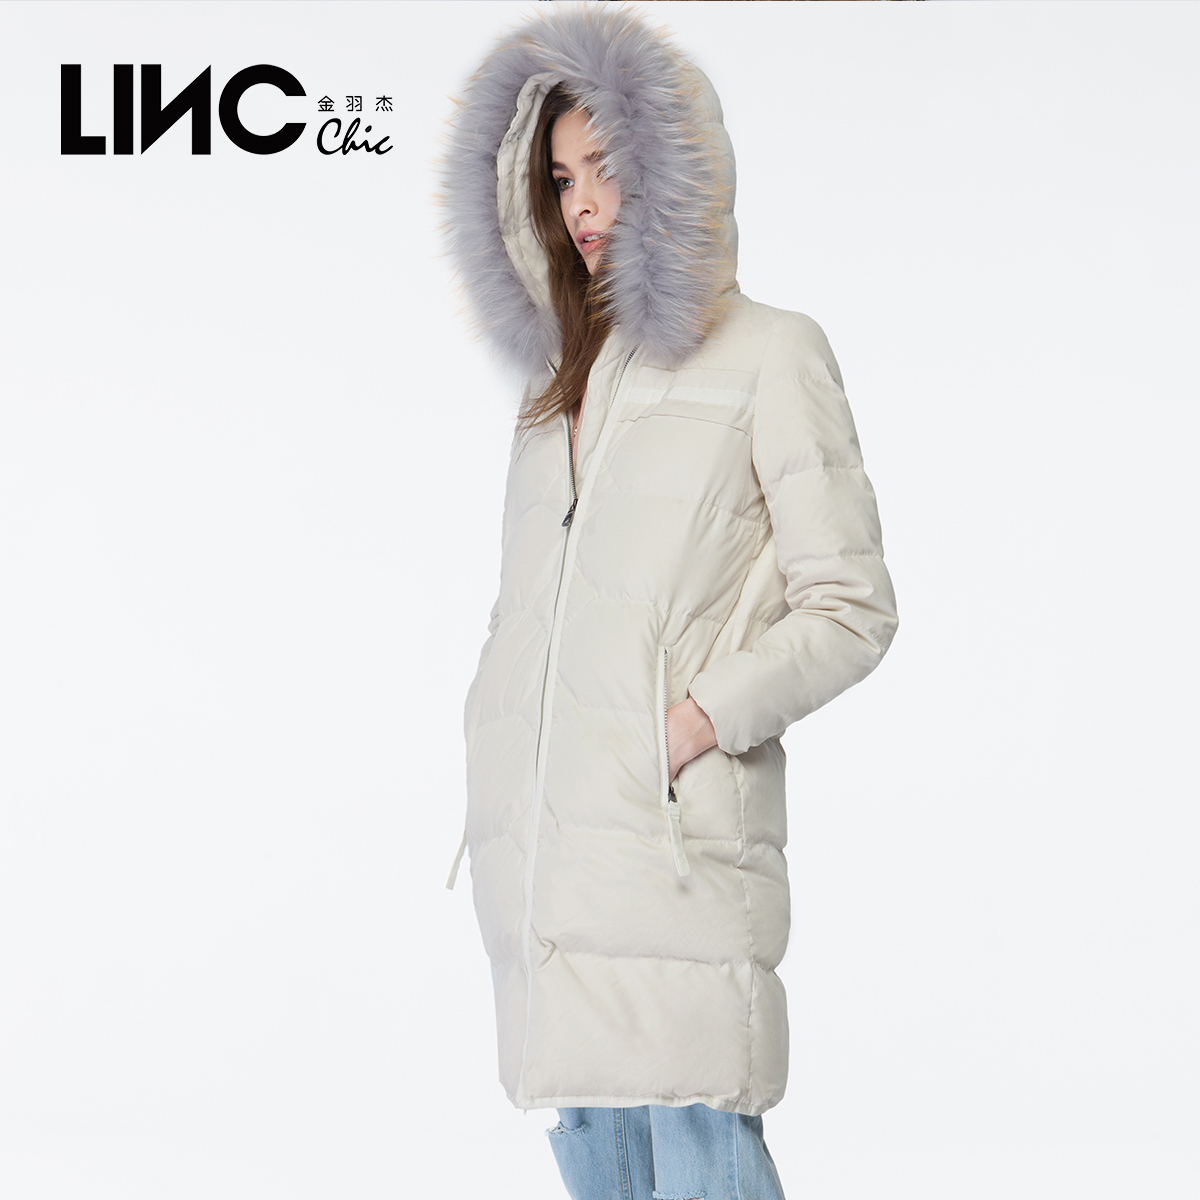 LINC金羽杰正品冬新款织带拼接大毛领羽绒服女中长款白鸭绒外套潮